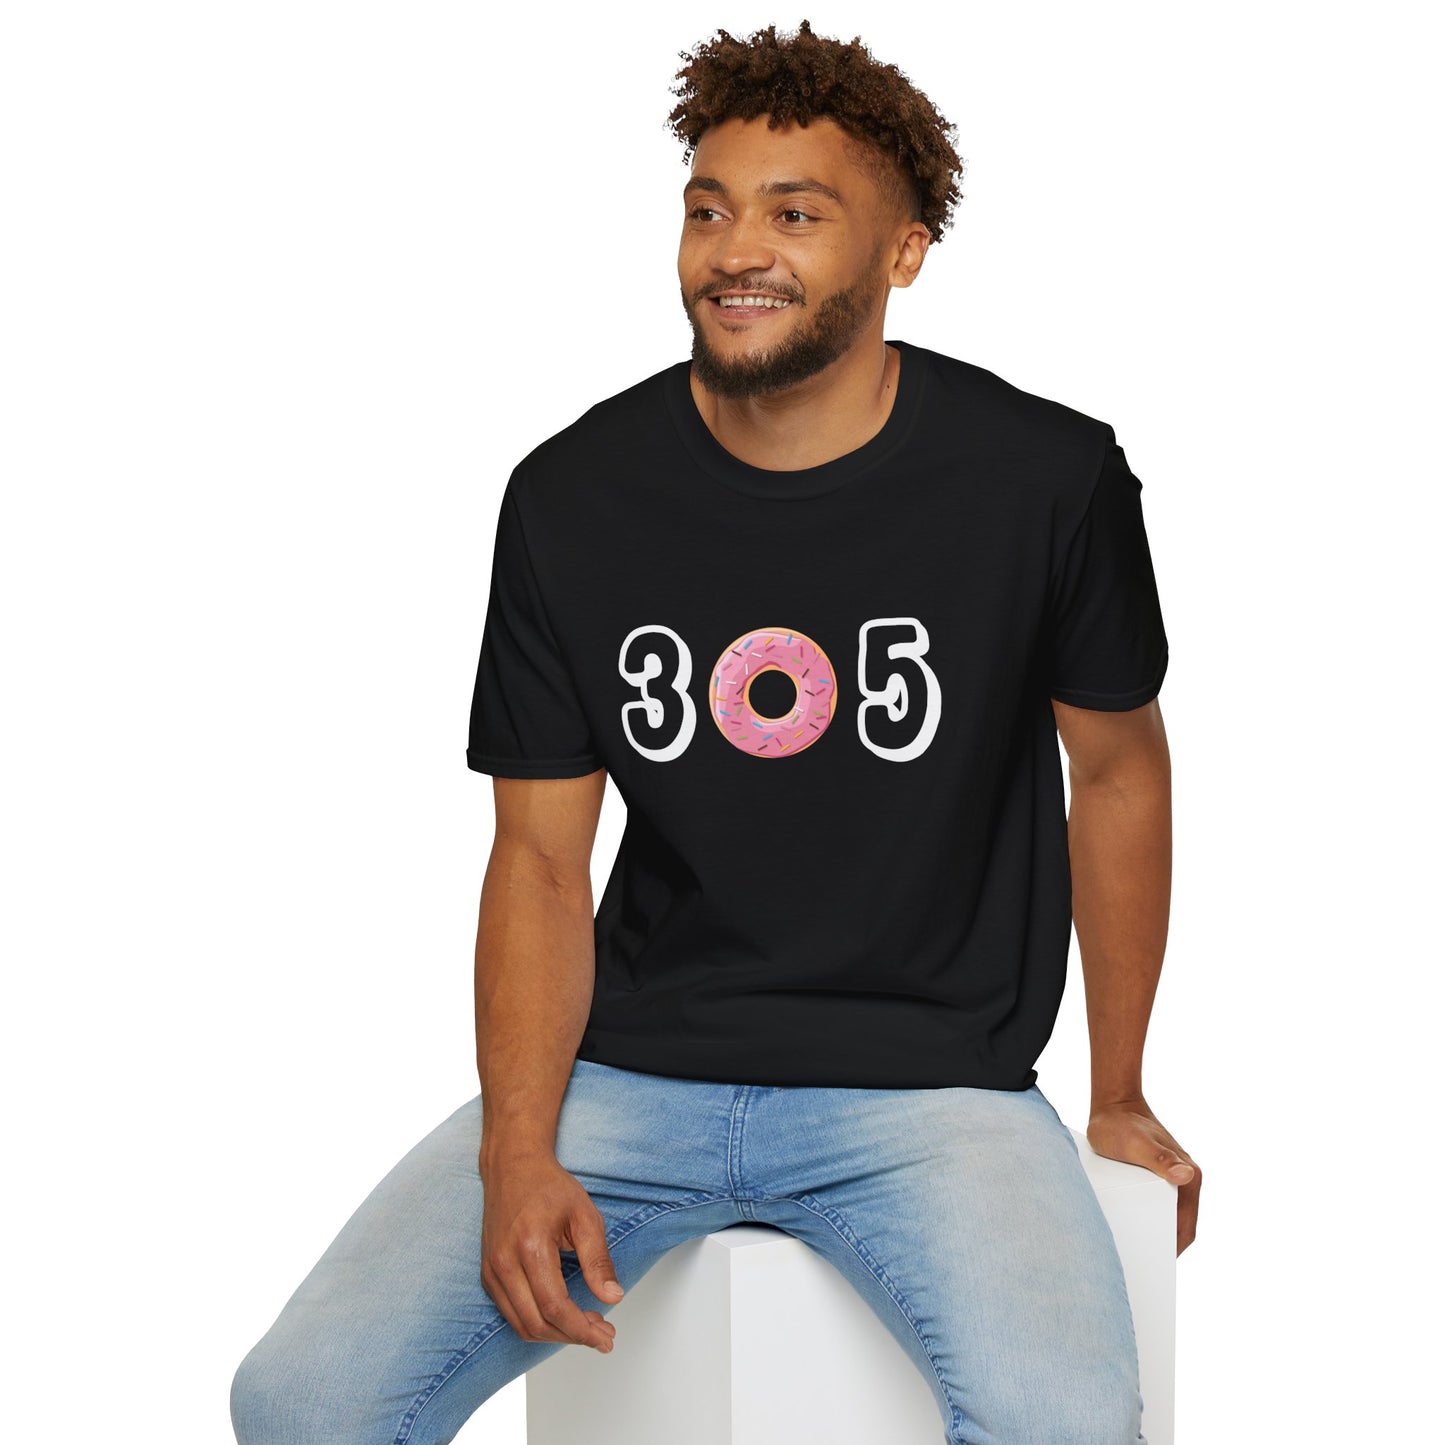 305 - Unisex Softstyle T-Shirt